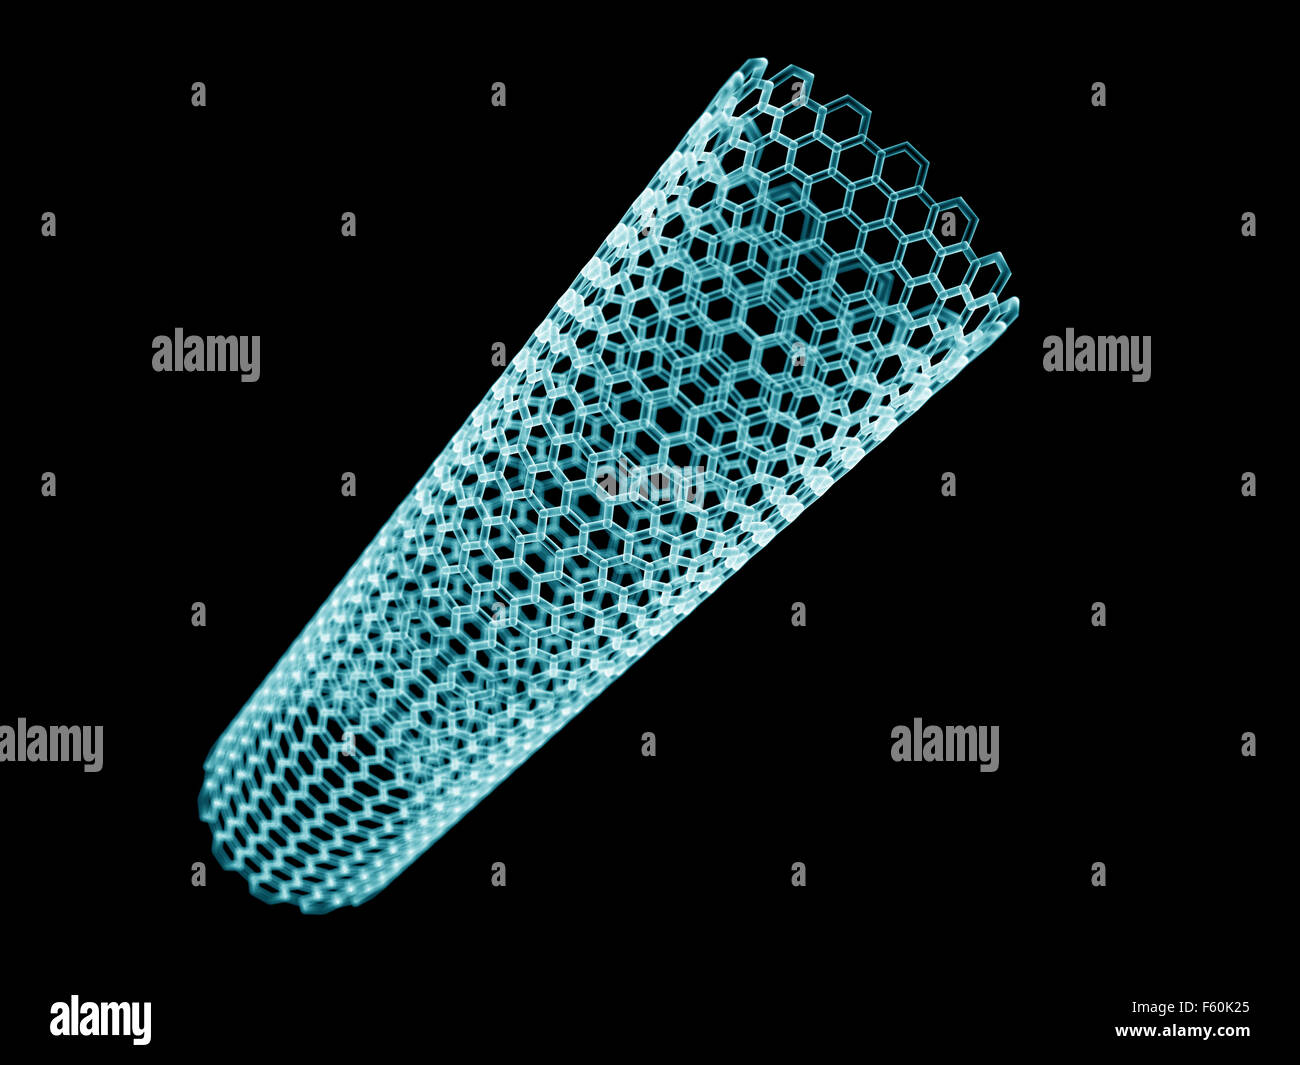 wissenschaftliche Illustration einer Nano-Röhre Stockfoto